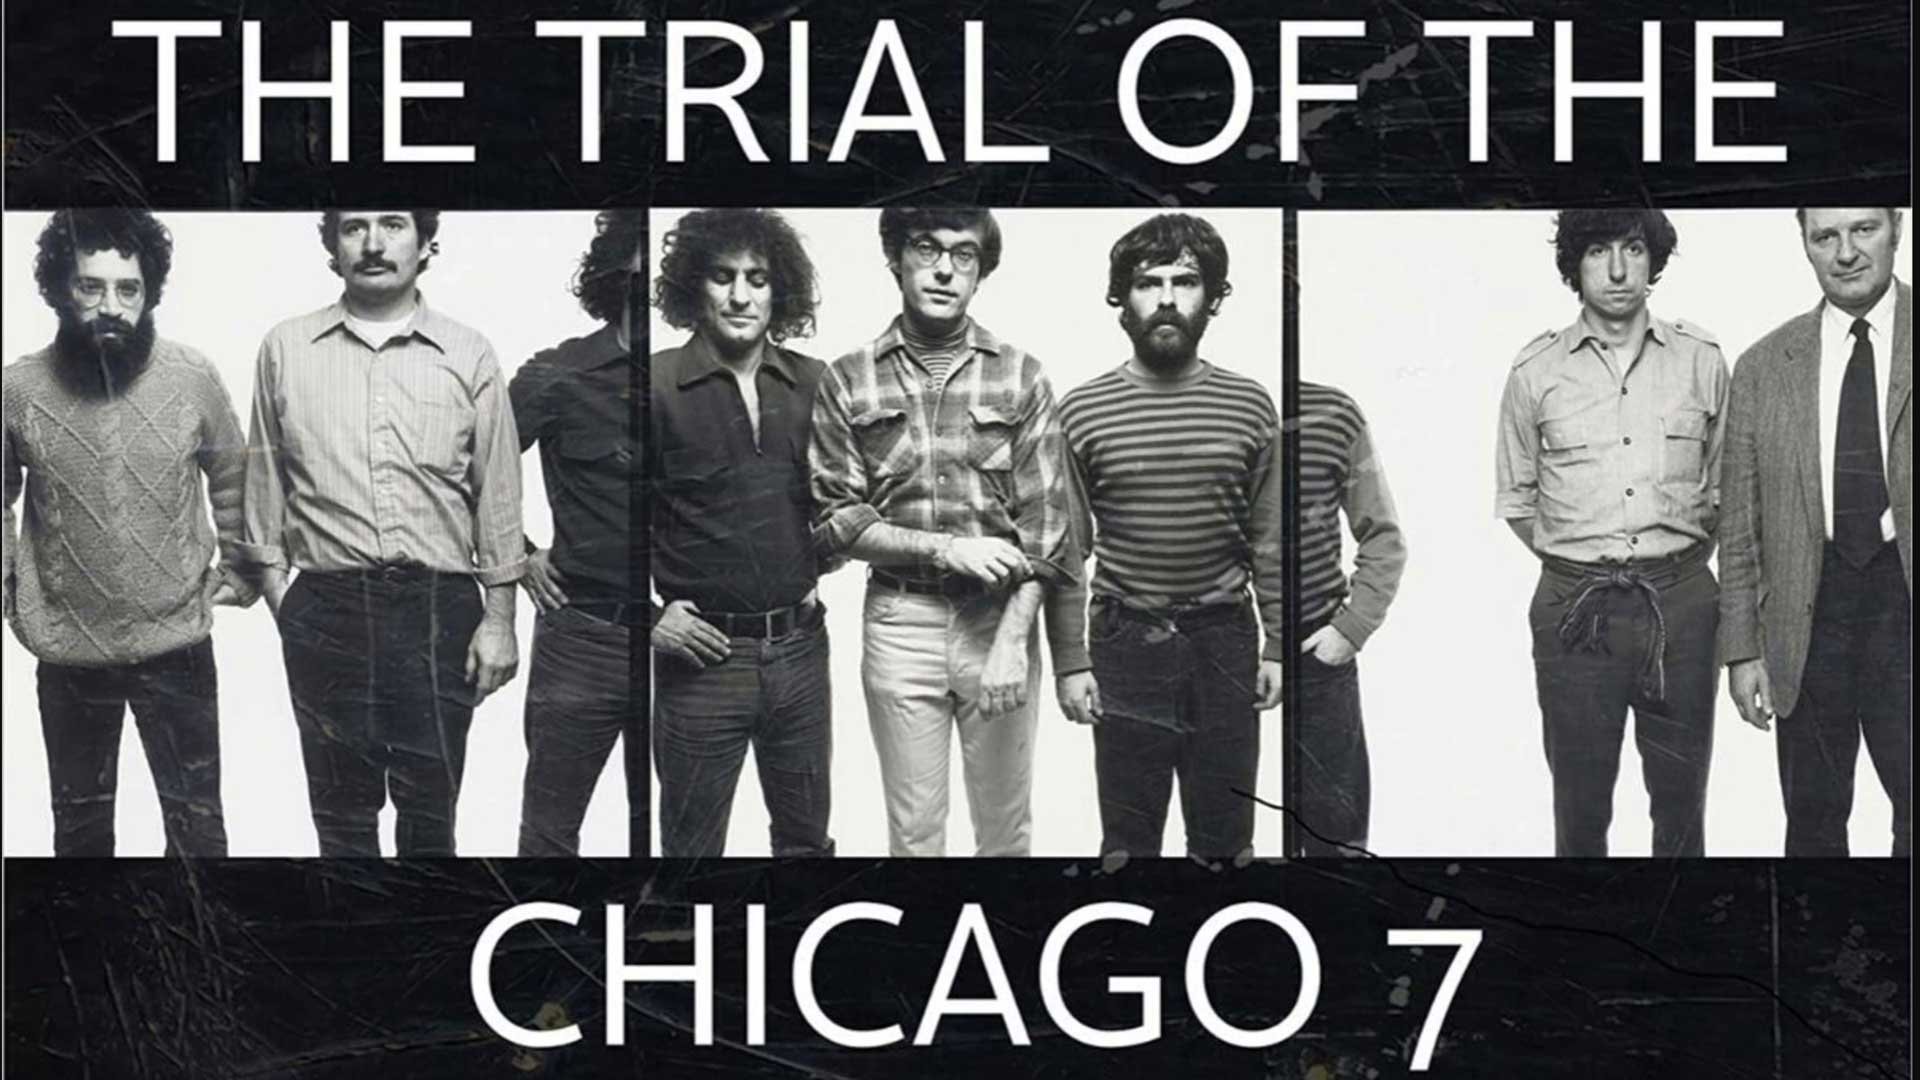 فیلم The Trial of the Chicago 7 و تصویر اشخاص واقعی حاضر در این اتفاق تاریخی